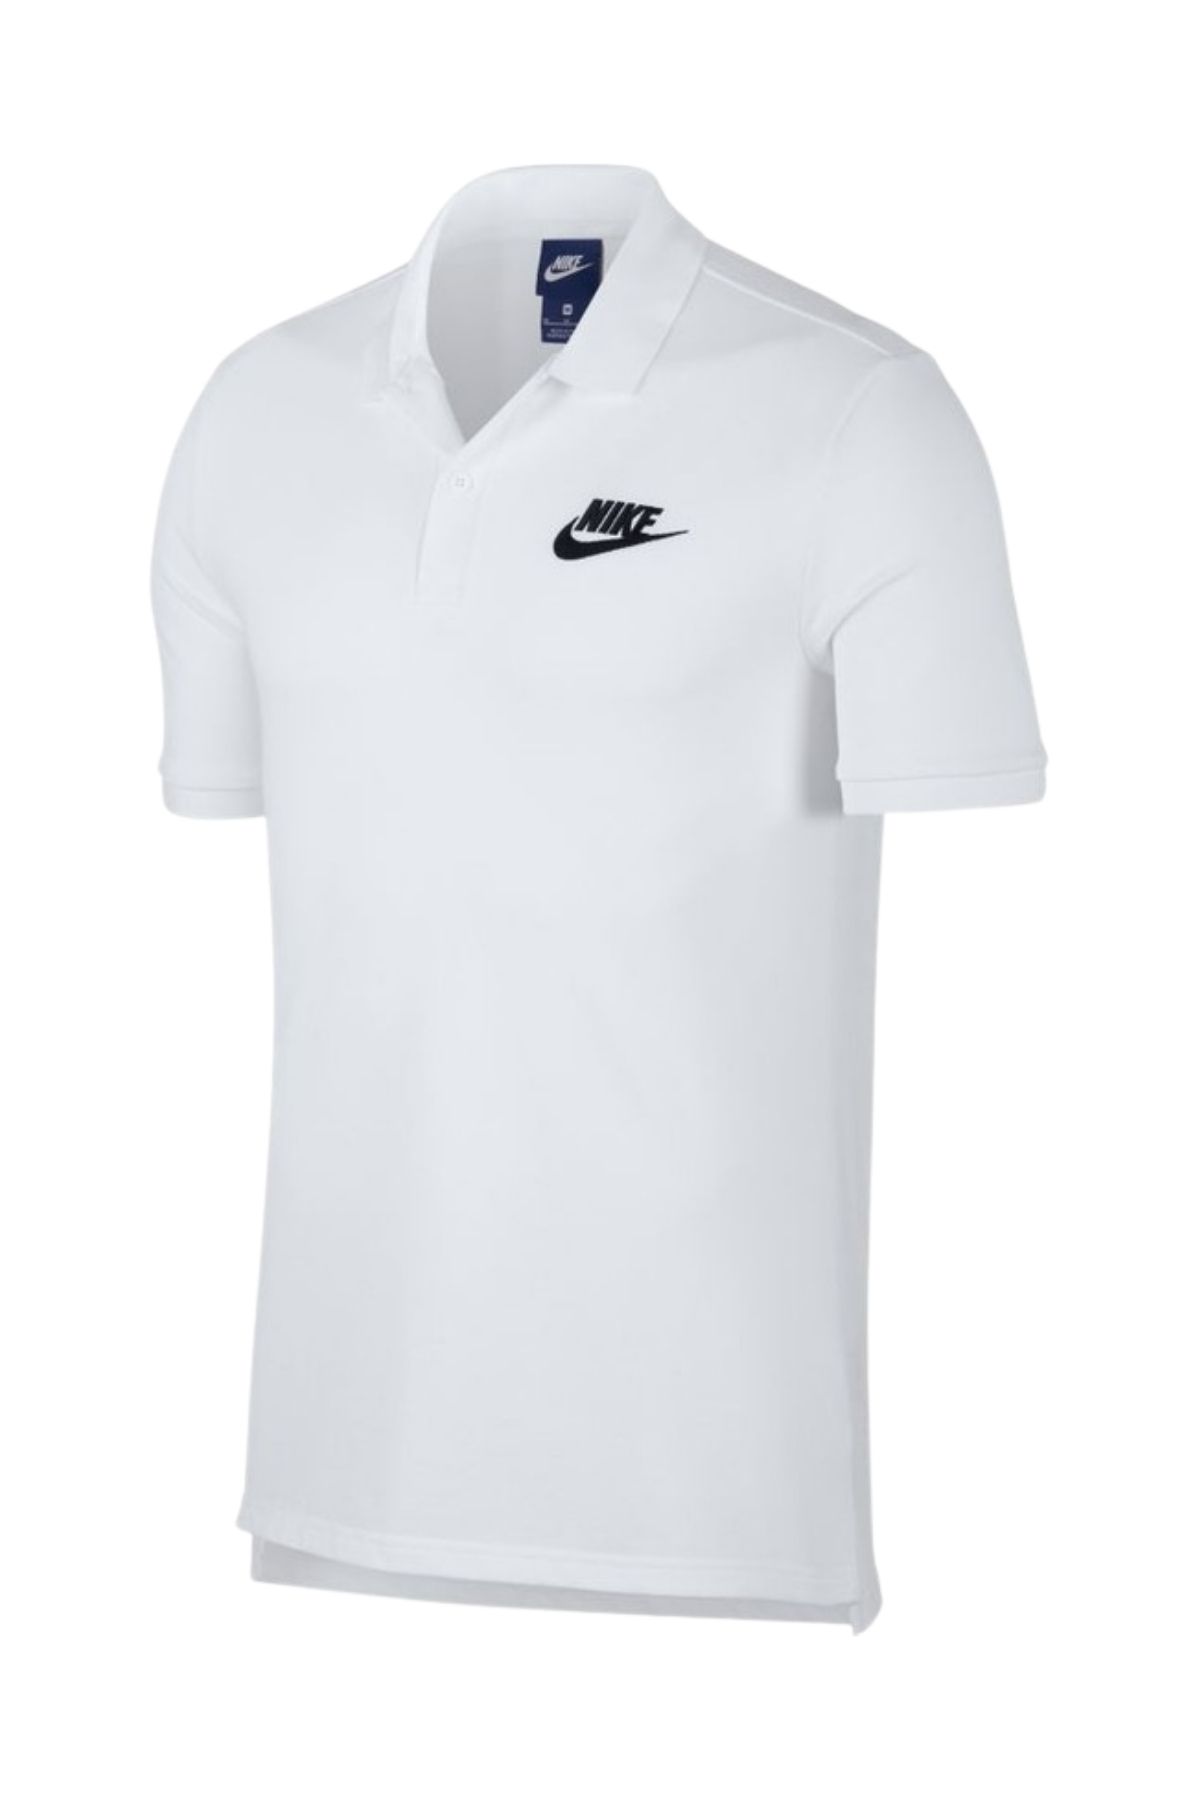 Nike Erkek White T-shirt 909746-100